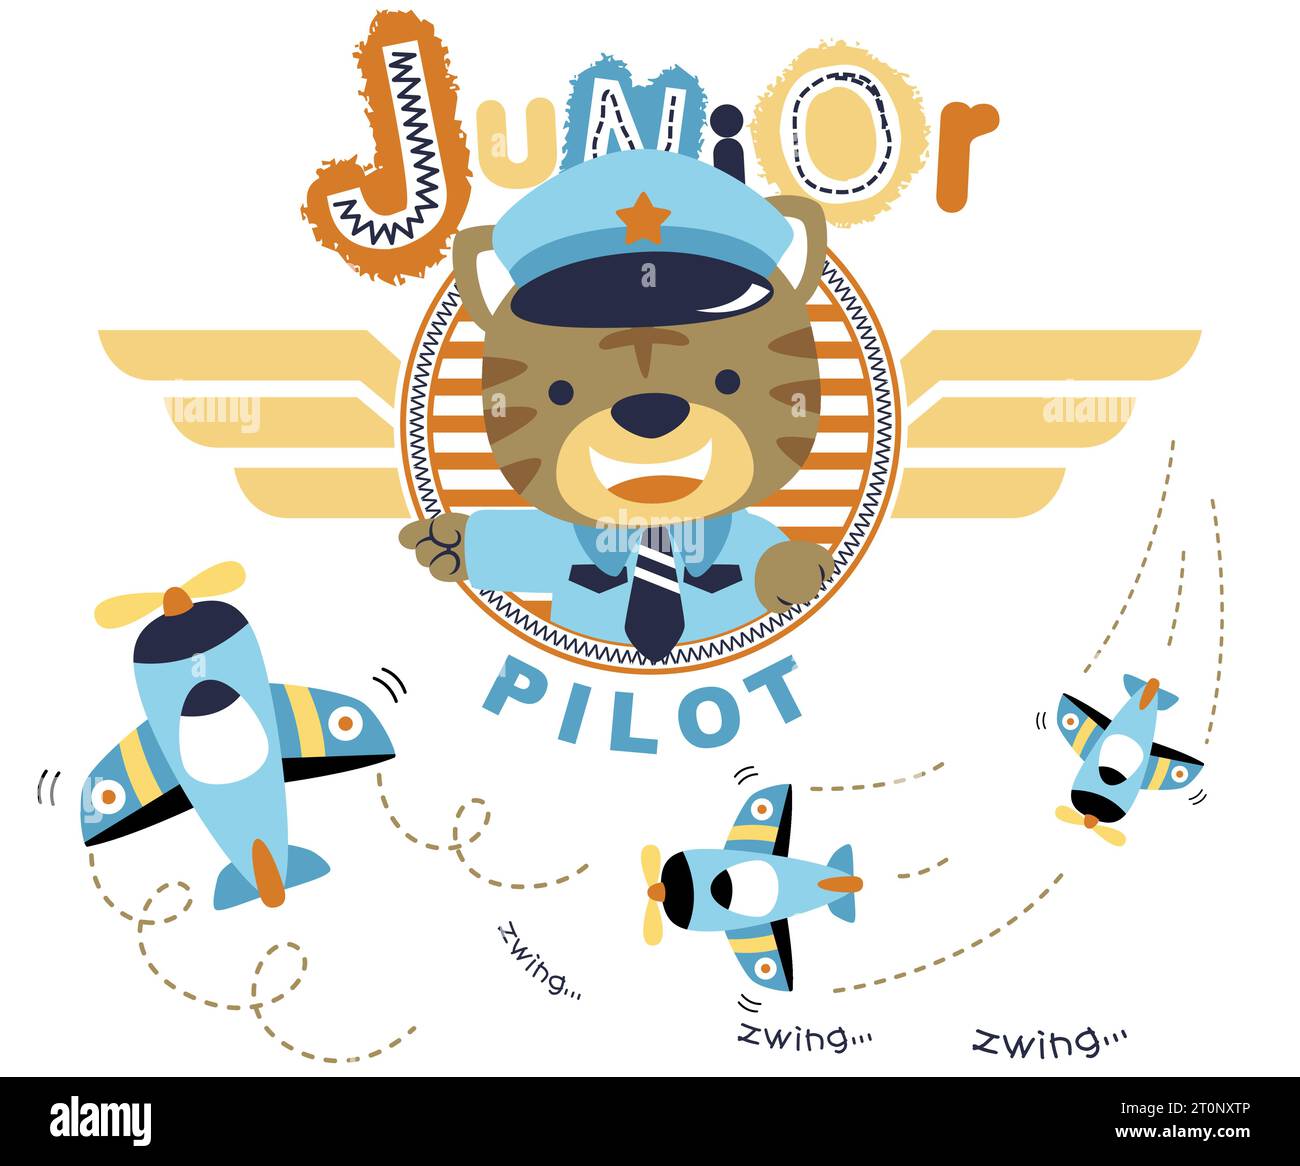 Chaton mignon en costume de pilote avec des avions, illustration vectorielle de dessin animé Illustration de Vecteur